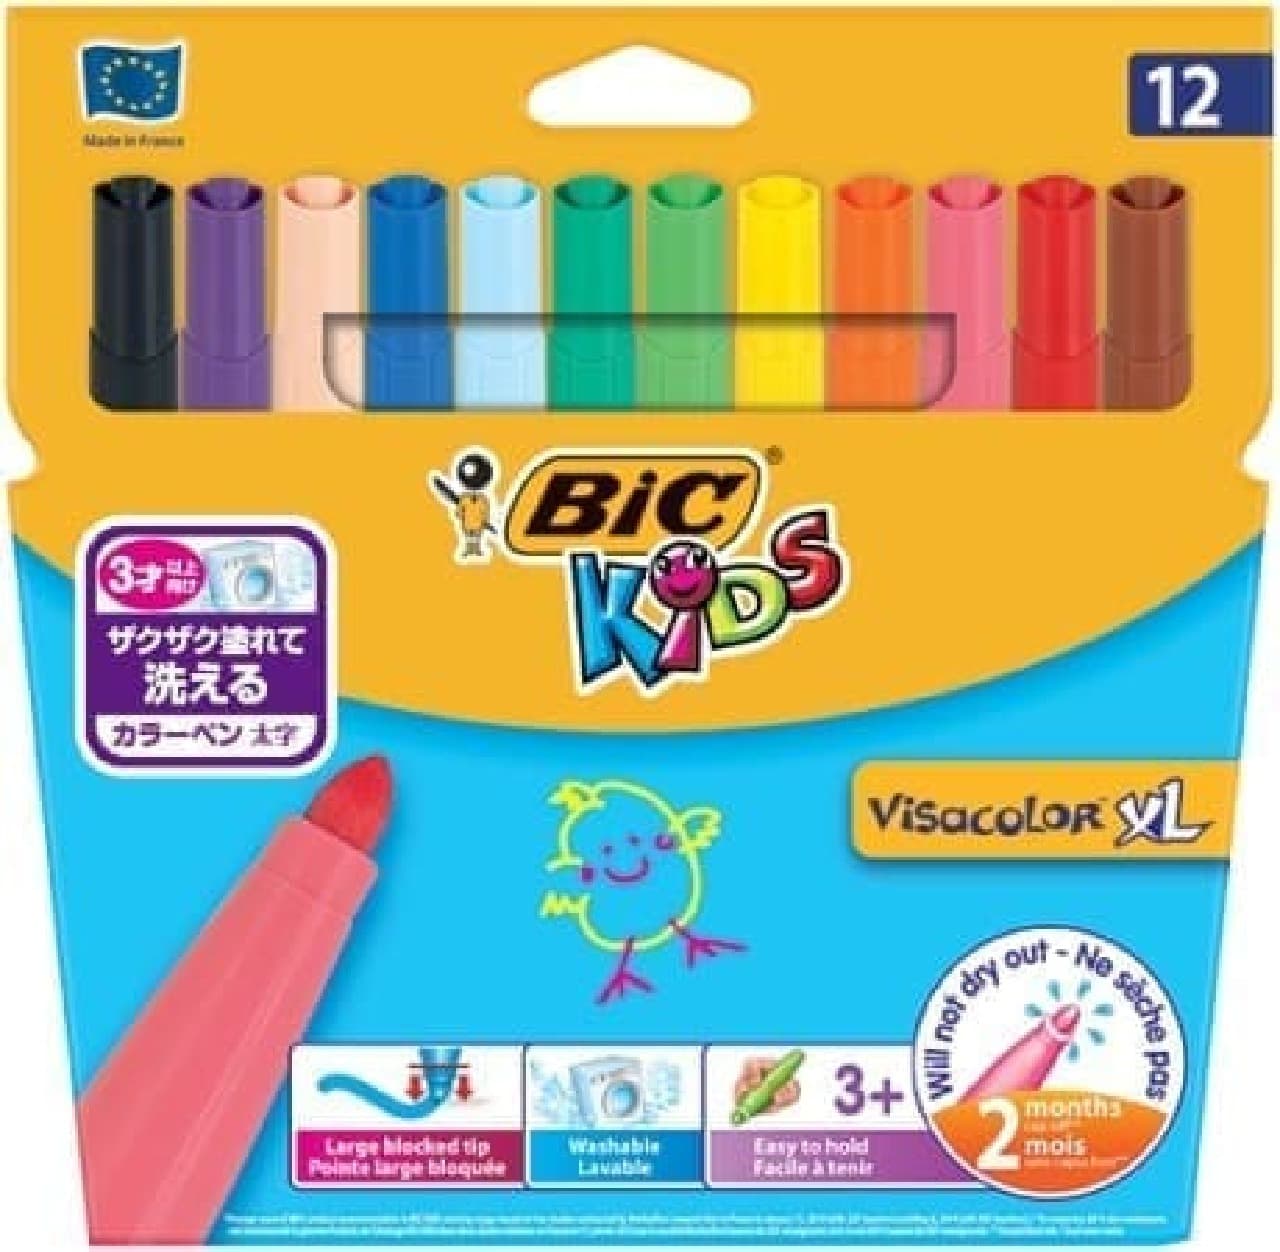 BIC KIDS "12 colors of color pen bold"